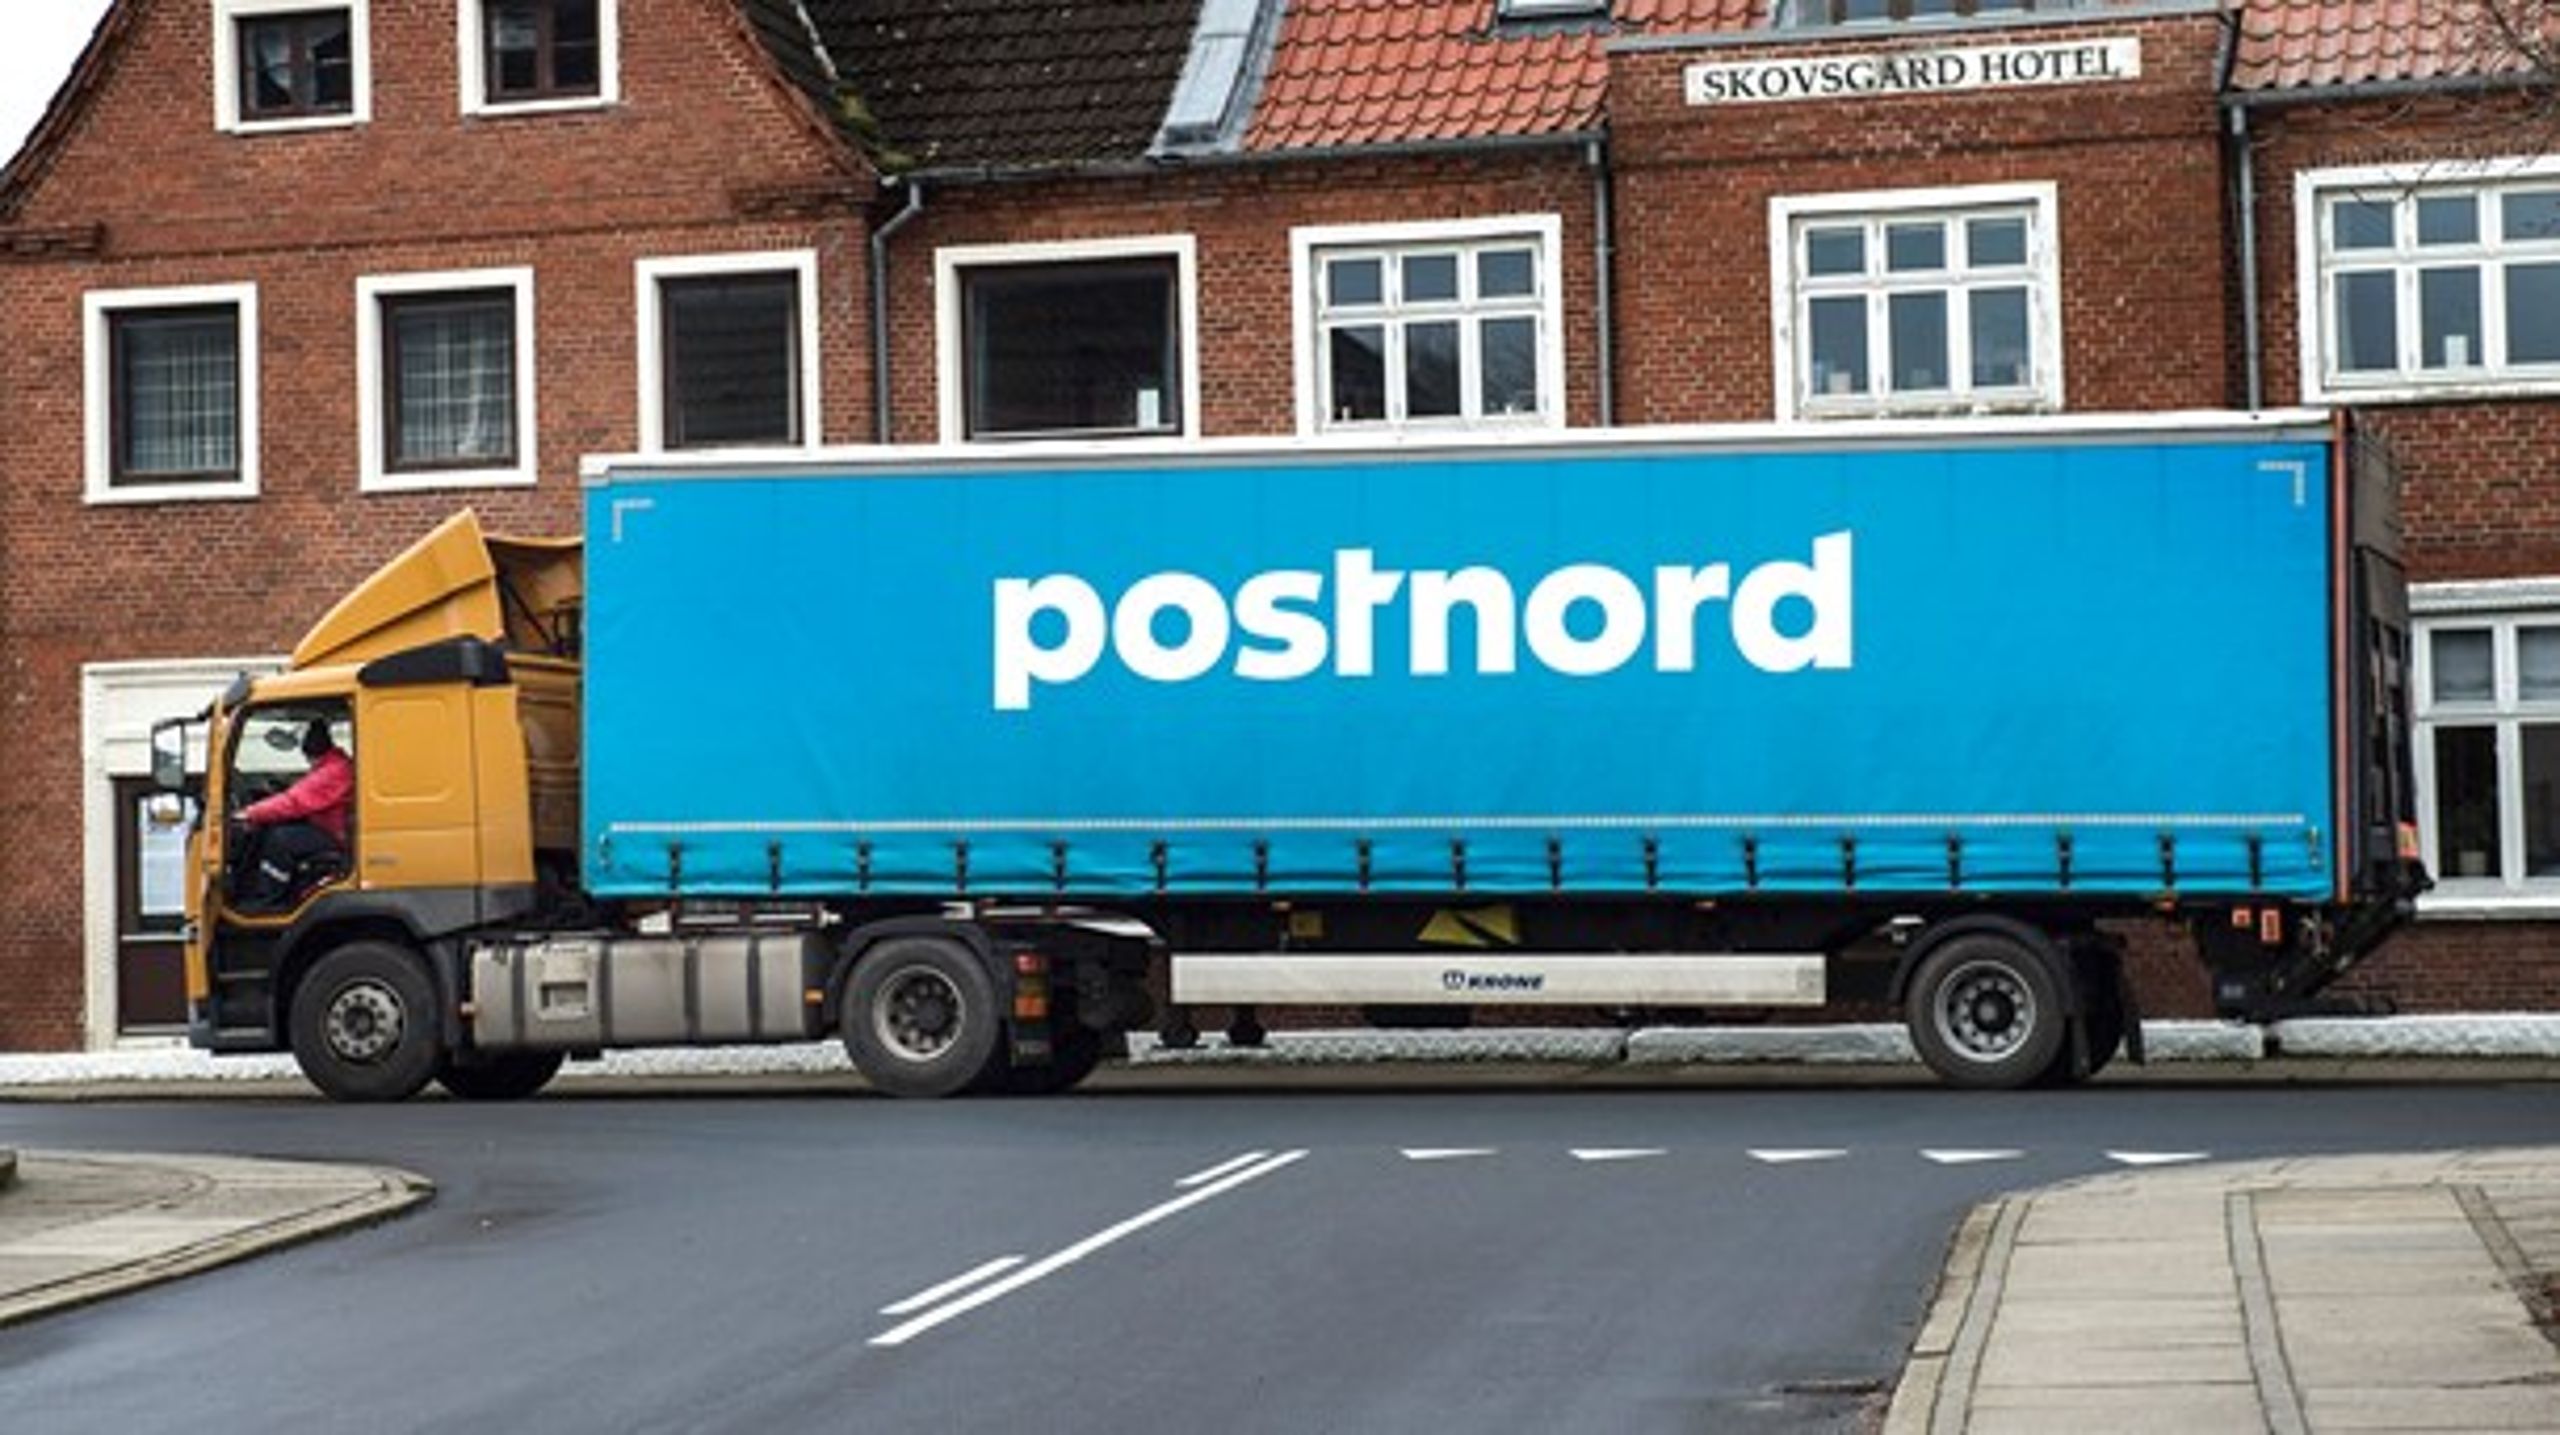 PostNord burde&nbsp;koncentrere sig om sin kerneopgave, nemlig den befordringspligtige udbringning af breve og visse pakker - og så overlade paller og stykgods til de private.